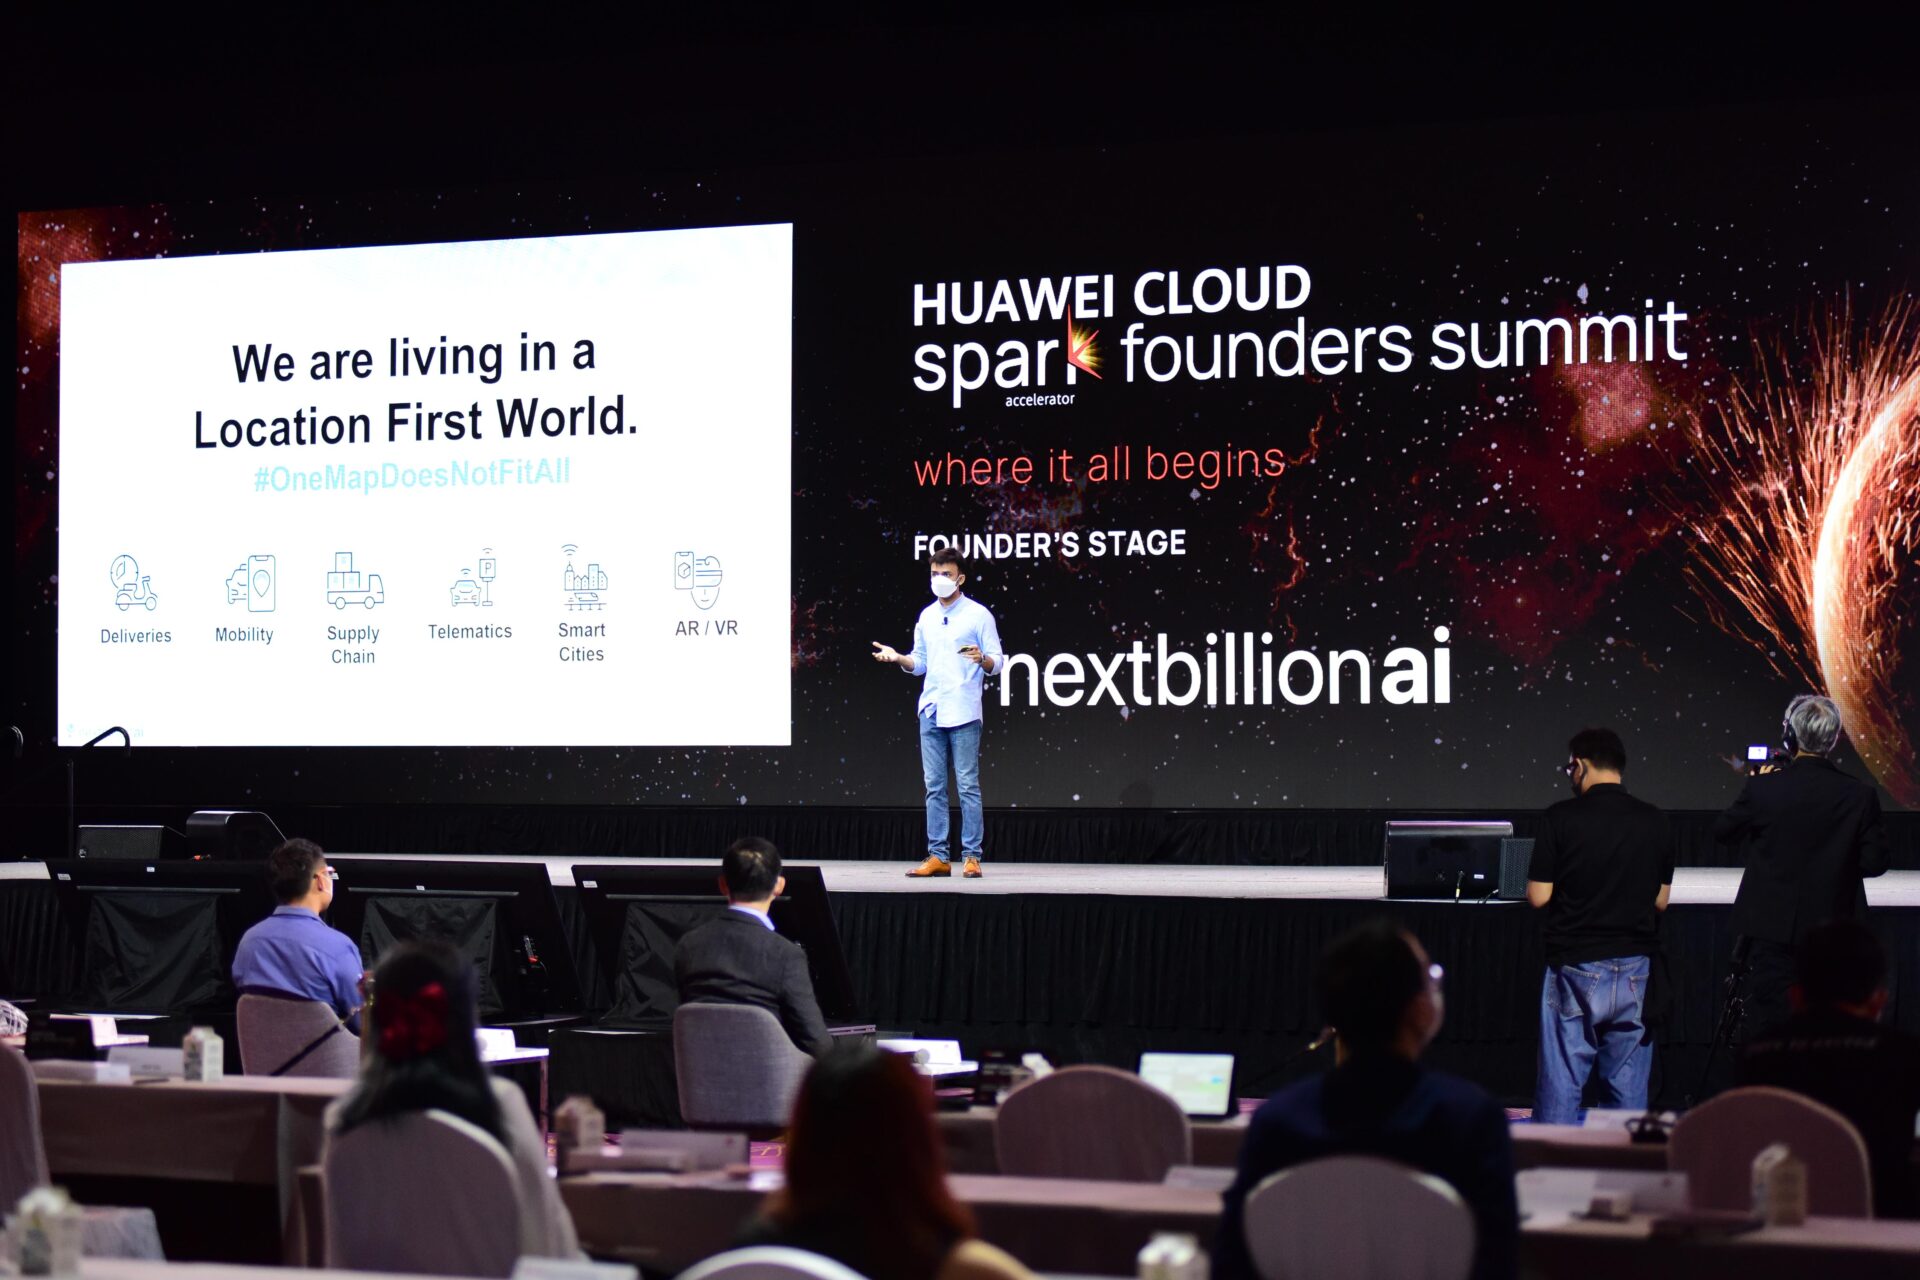 Cộng đồng khởi nghiệp khu vực Châu Á - Thái Bình Dương sẽ nhận được khoản đầu tư 100 triệu USD từ Huawei